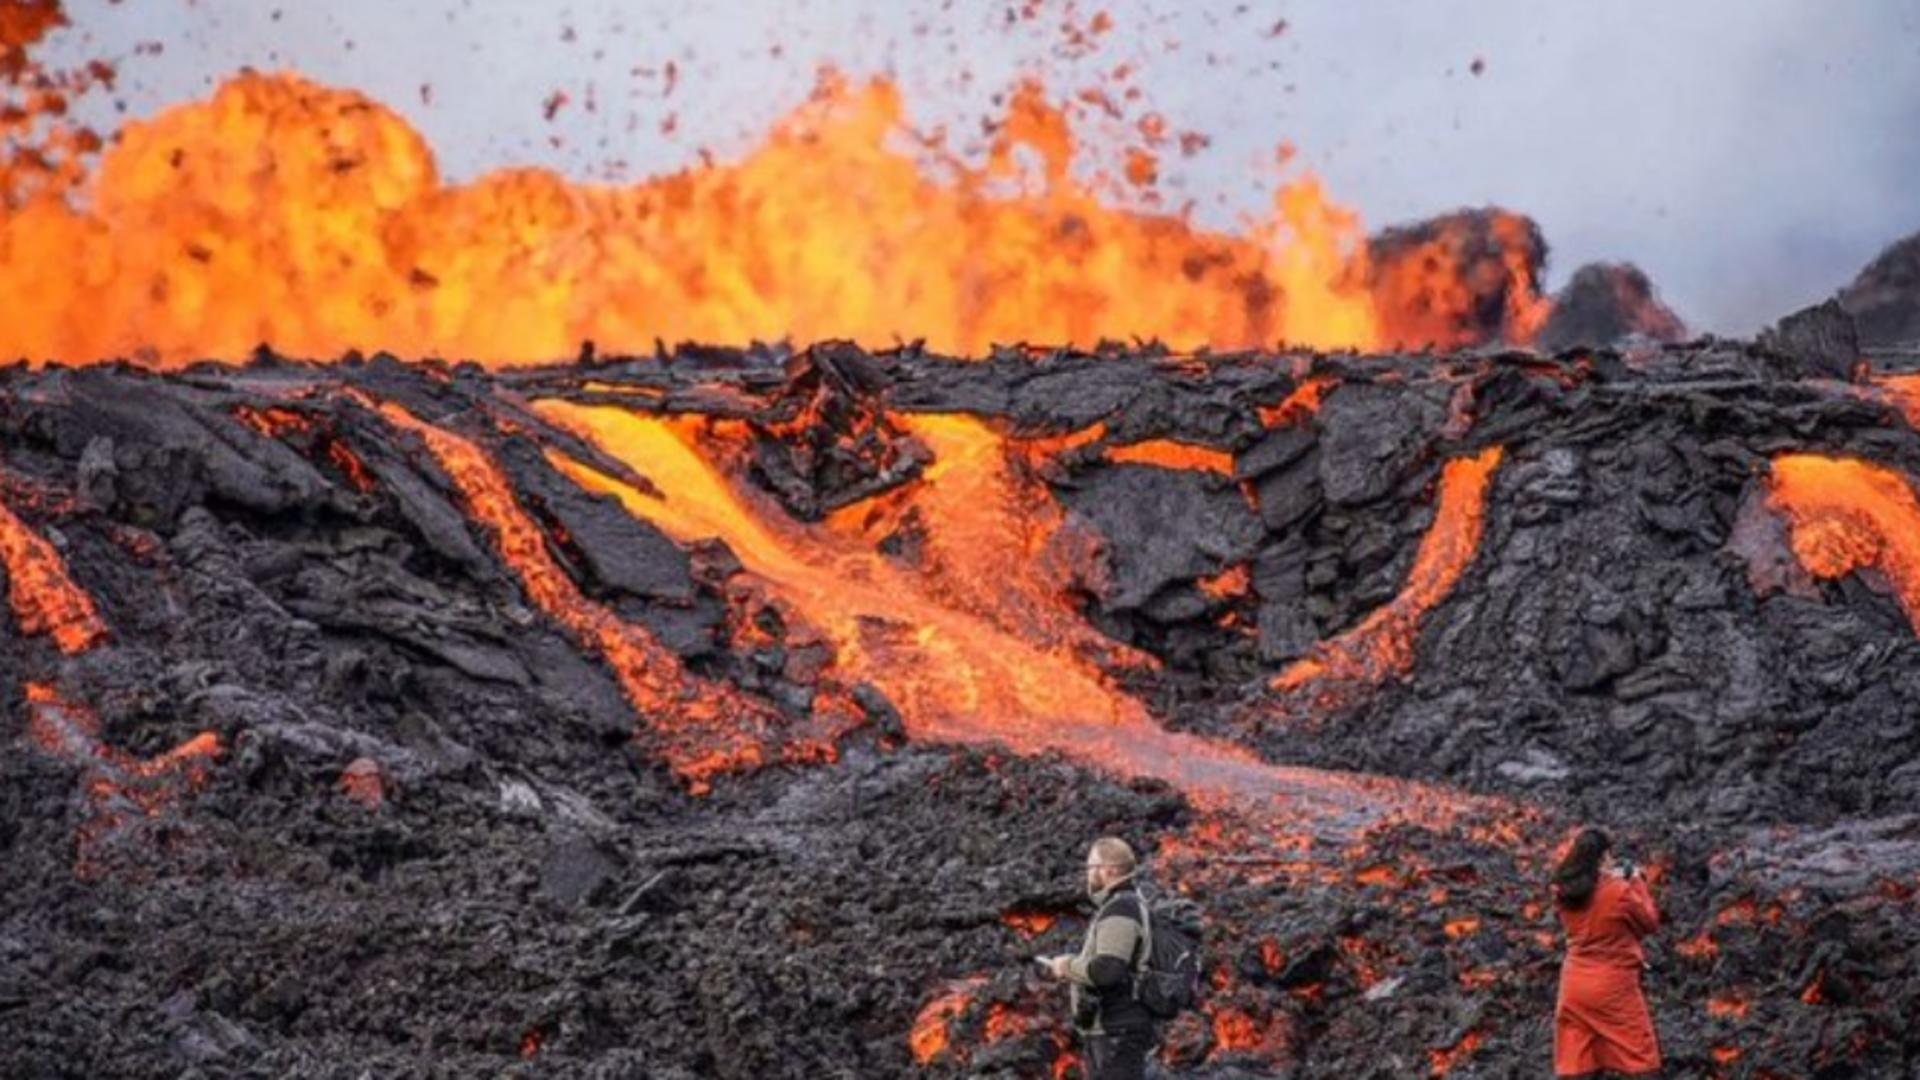 Erupție vulcanică în Islanda, urmărită de mii de turiști. Gazele pot fi fatale - Imagini spectaculoase